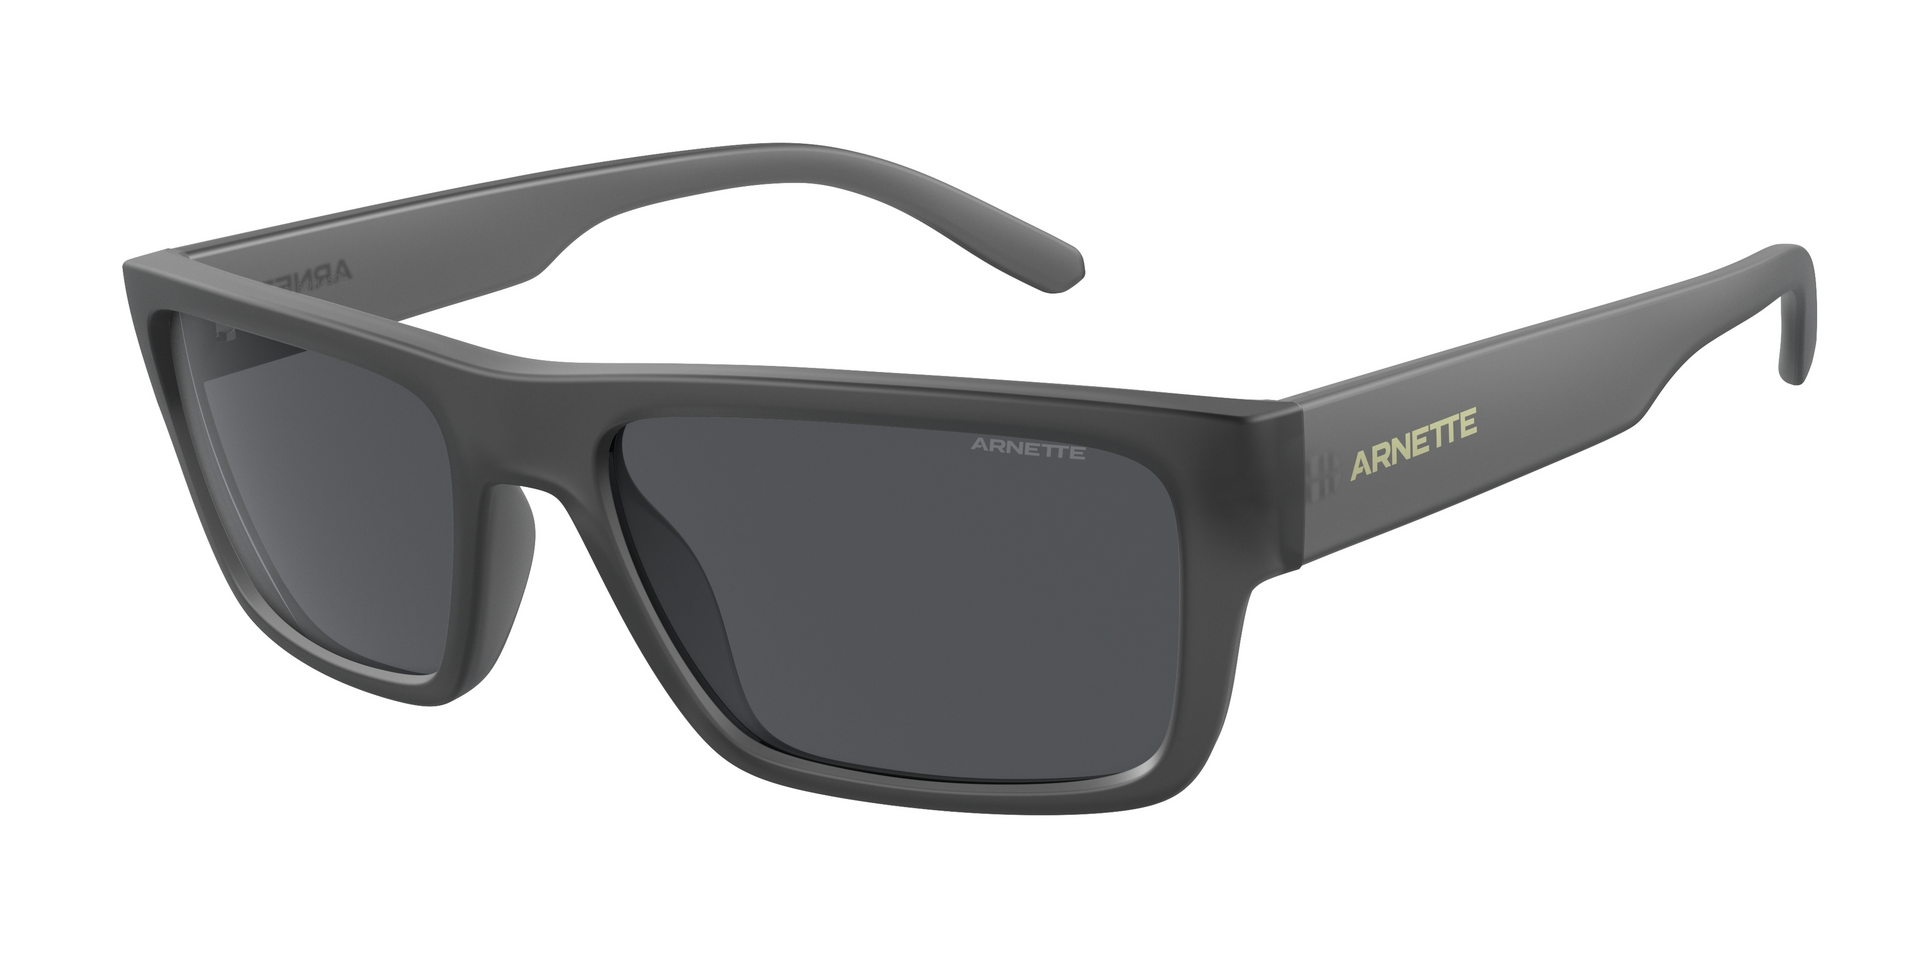 Das Bild zeigt die Sonnenbrille AN4338 278687 von der Marke Arnette in schwarz.